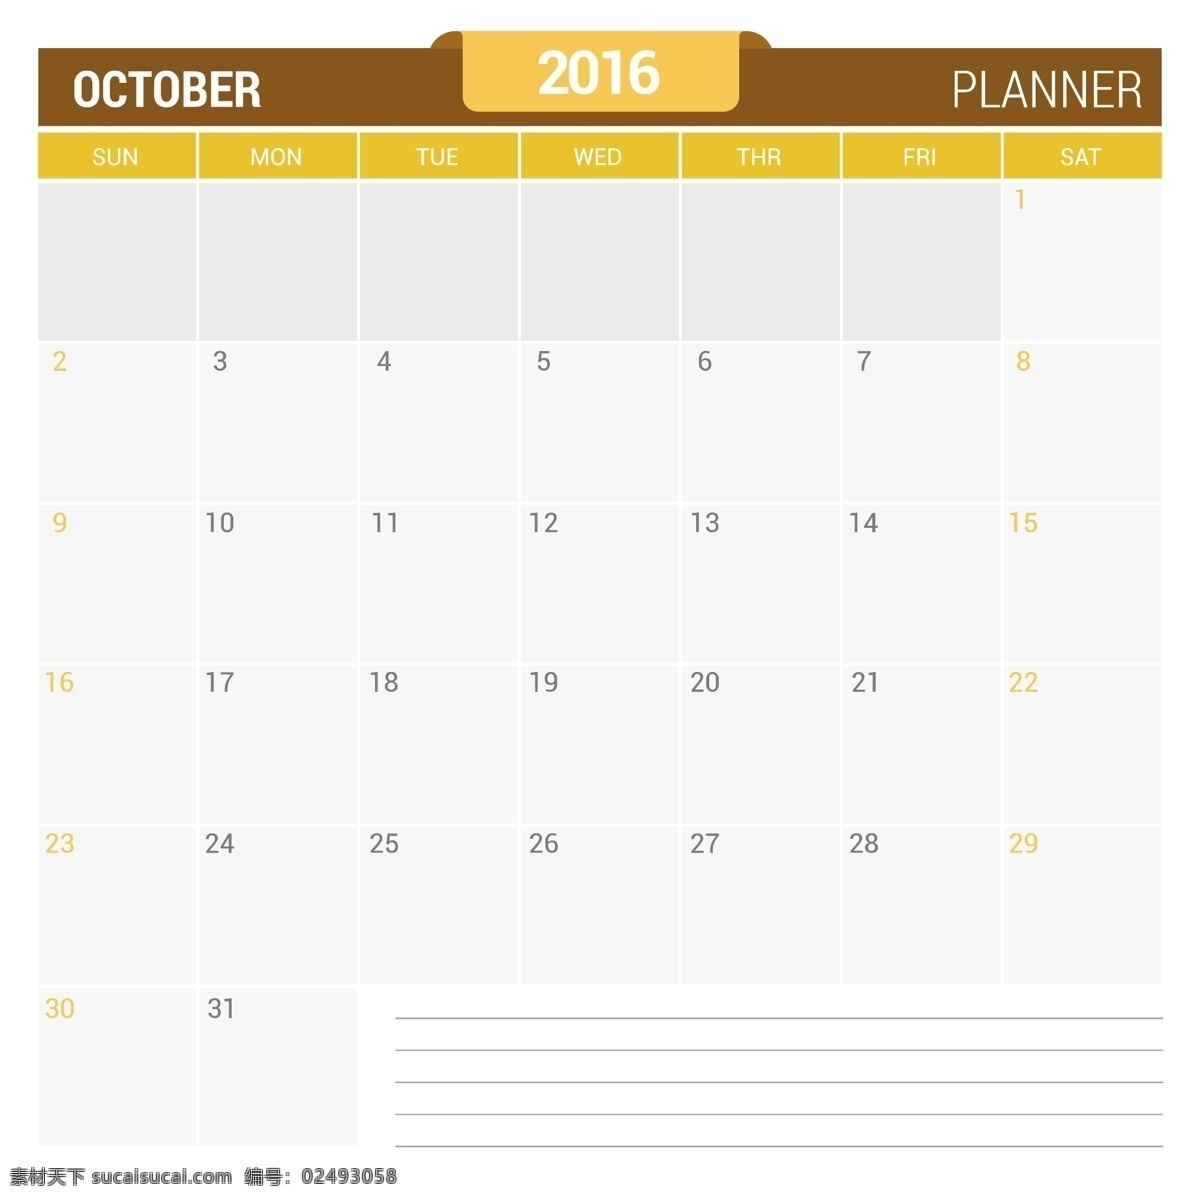 公历 十月 2016 日历 模板 时间 数字 年份 日期 日程 日记 月份 计划 周 组织 年度 月度 白色